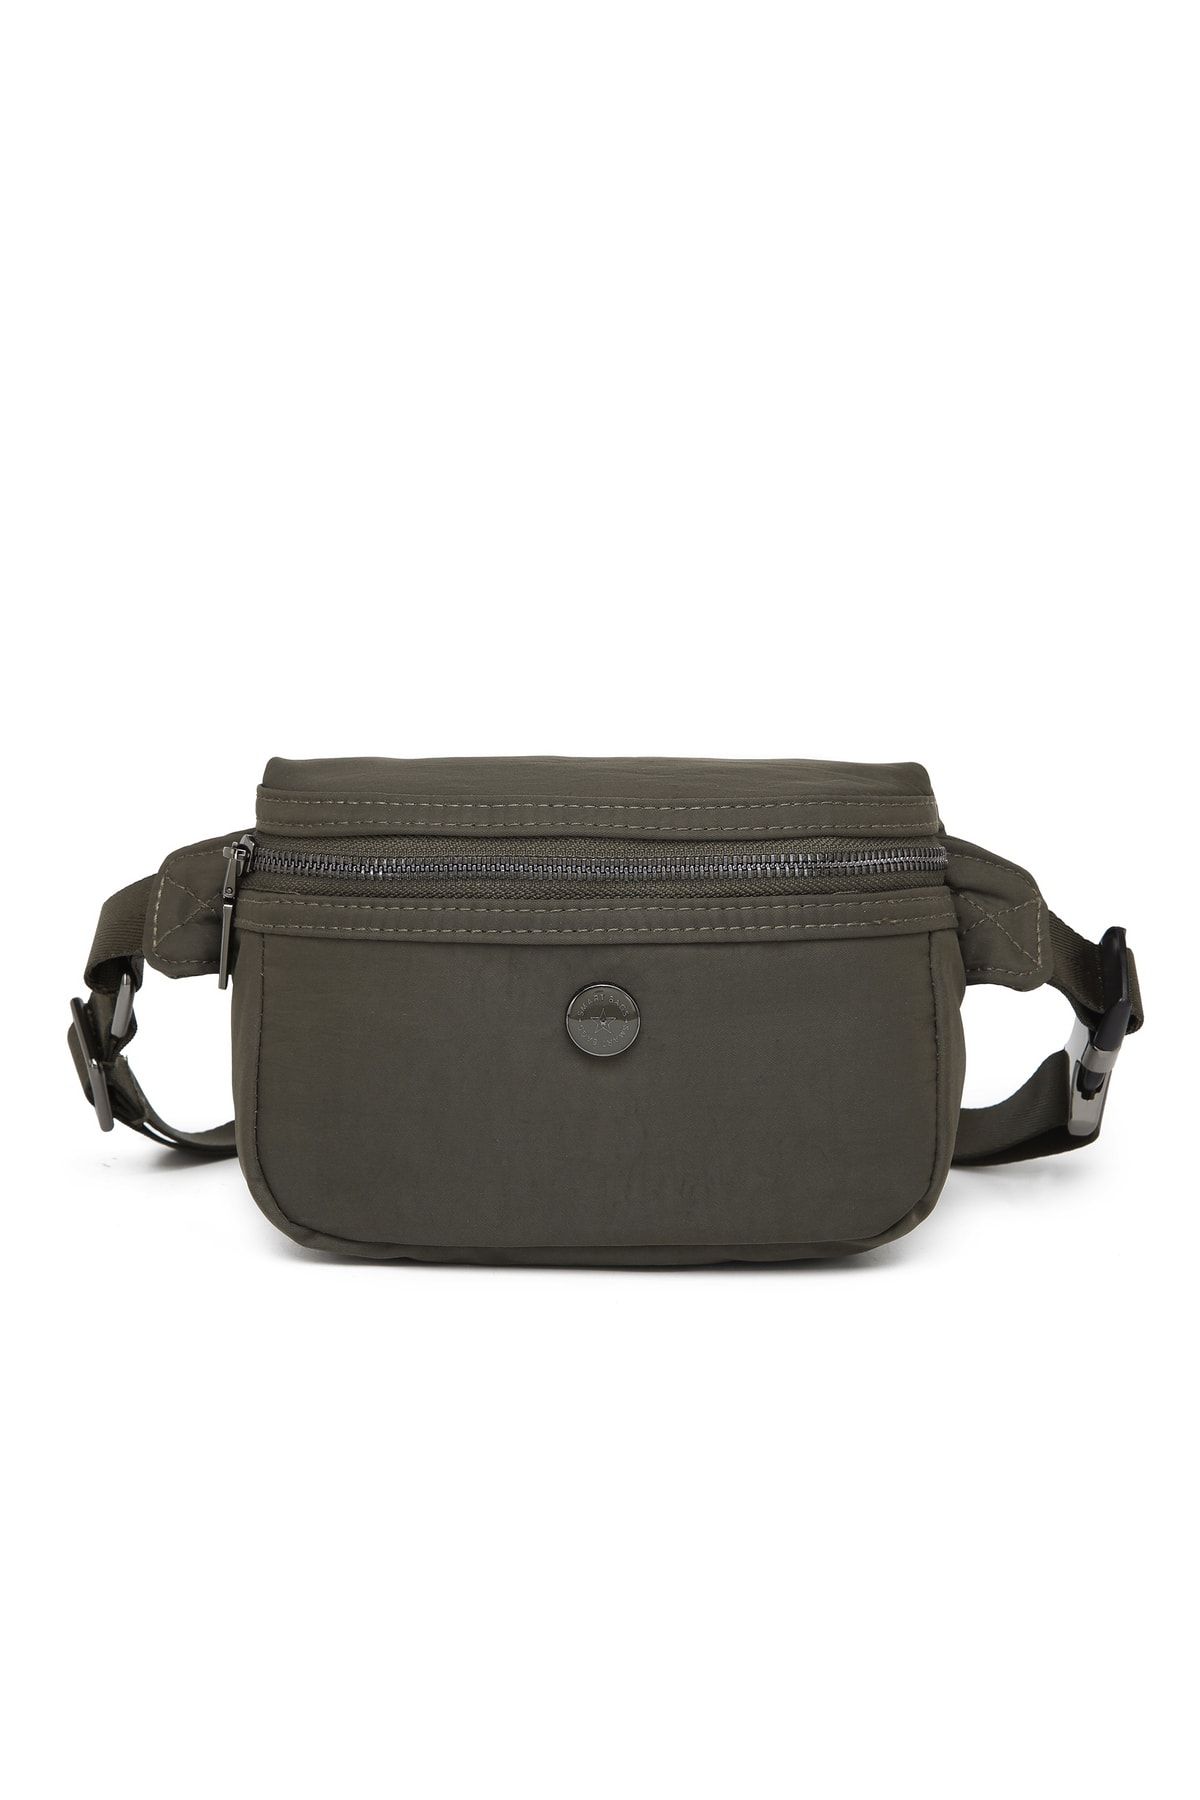 Smart Bags Kumaş Kadın Bodybag Bel Çantası 3130 K.yeşil